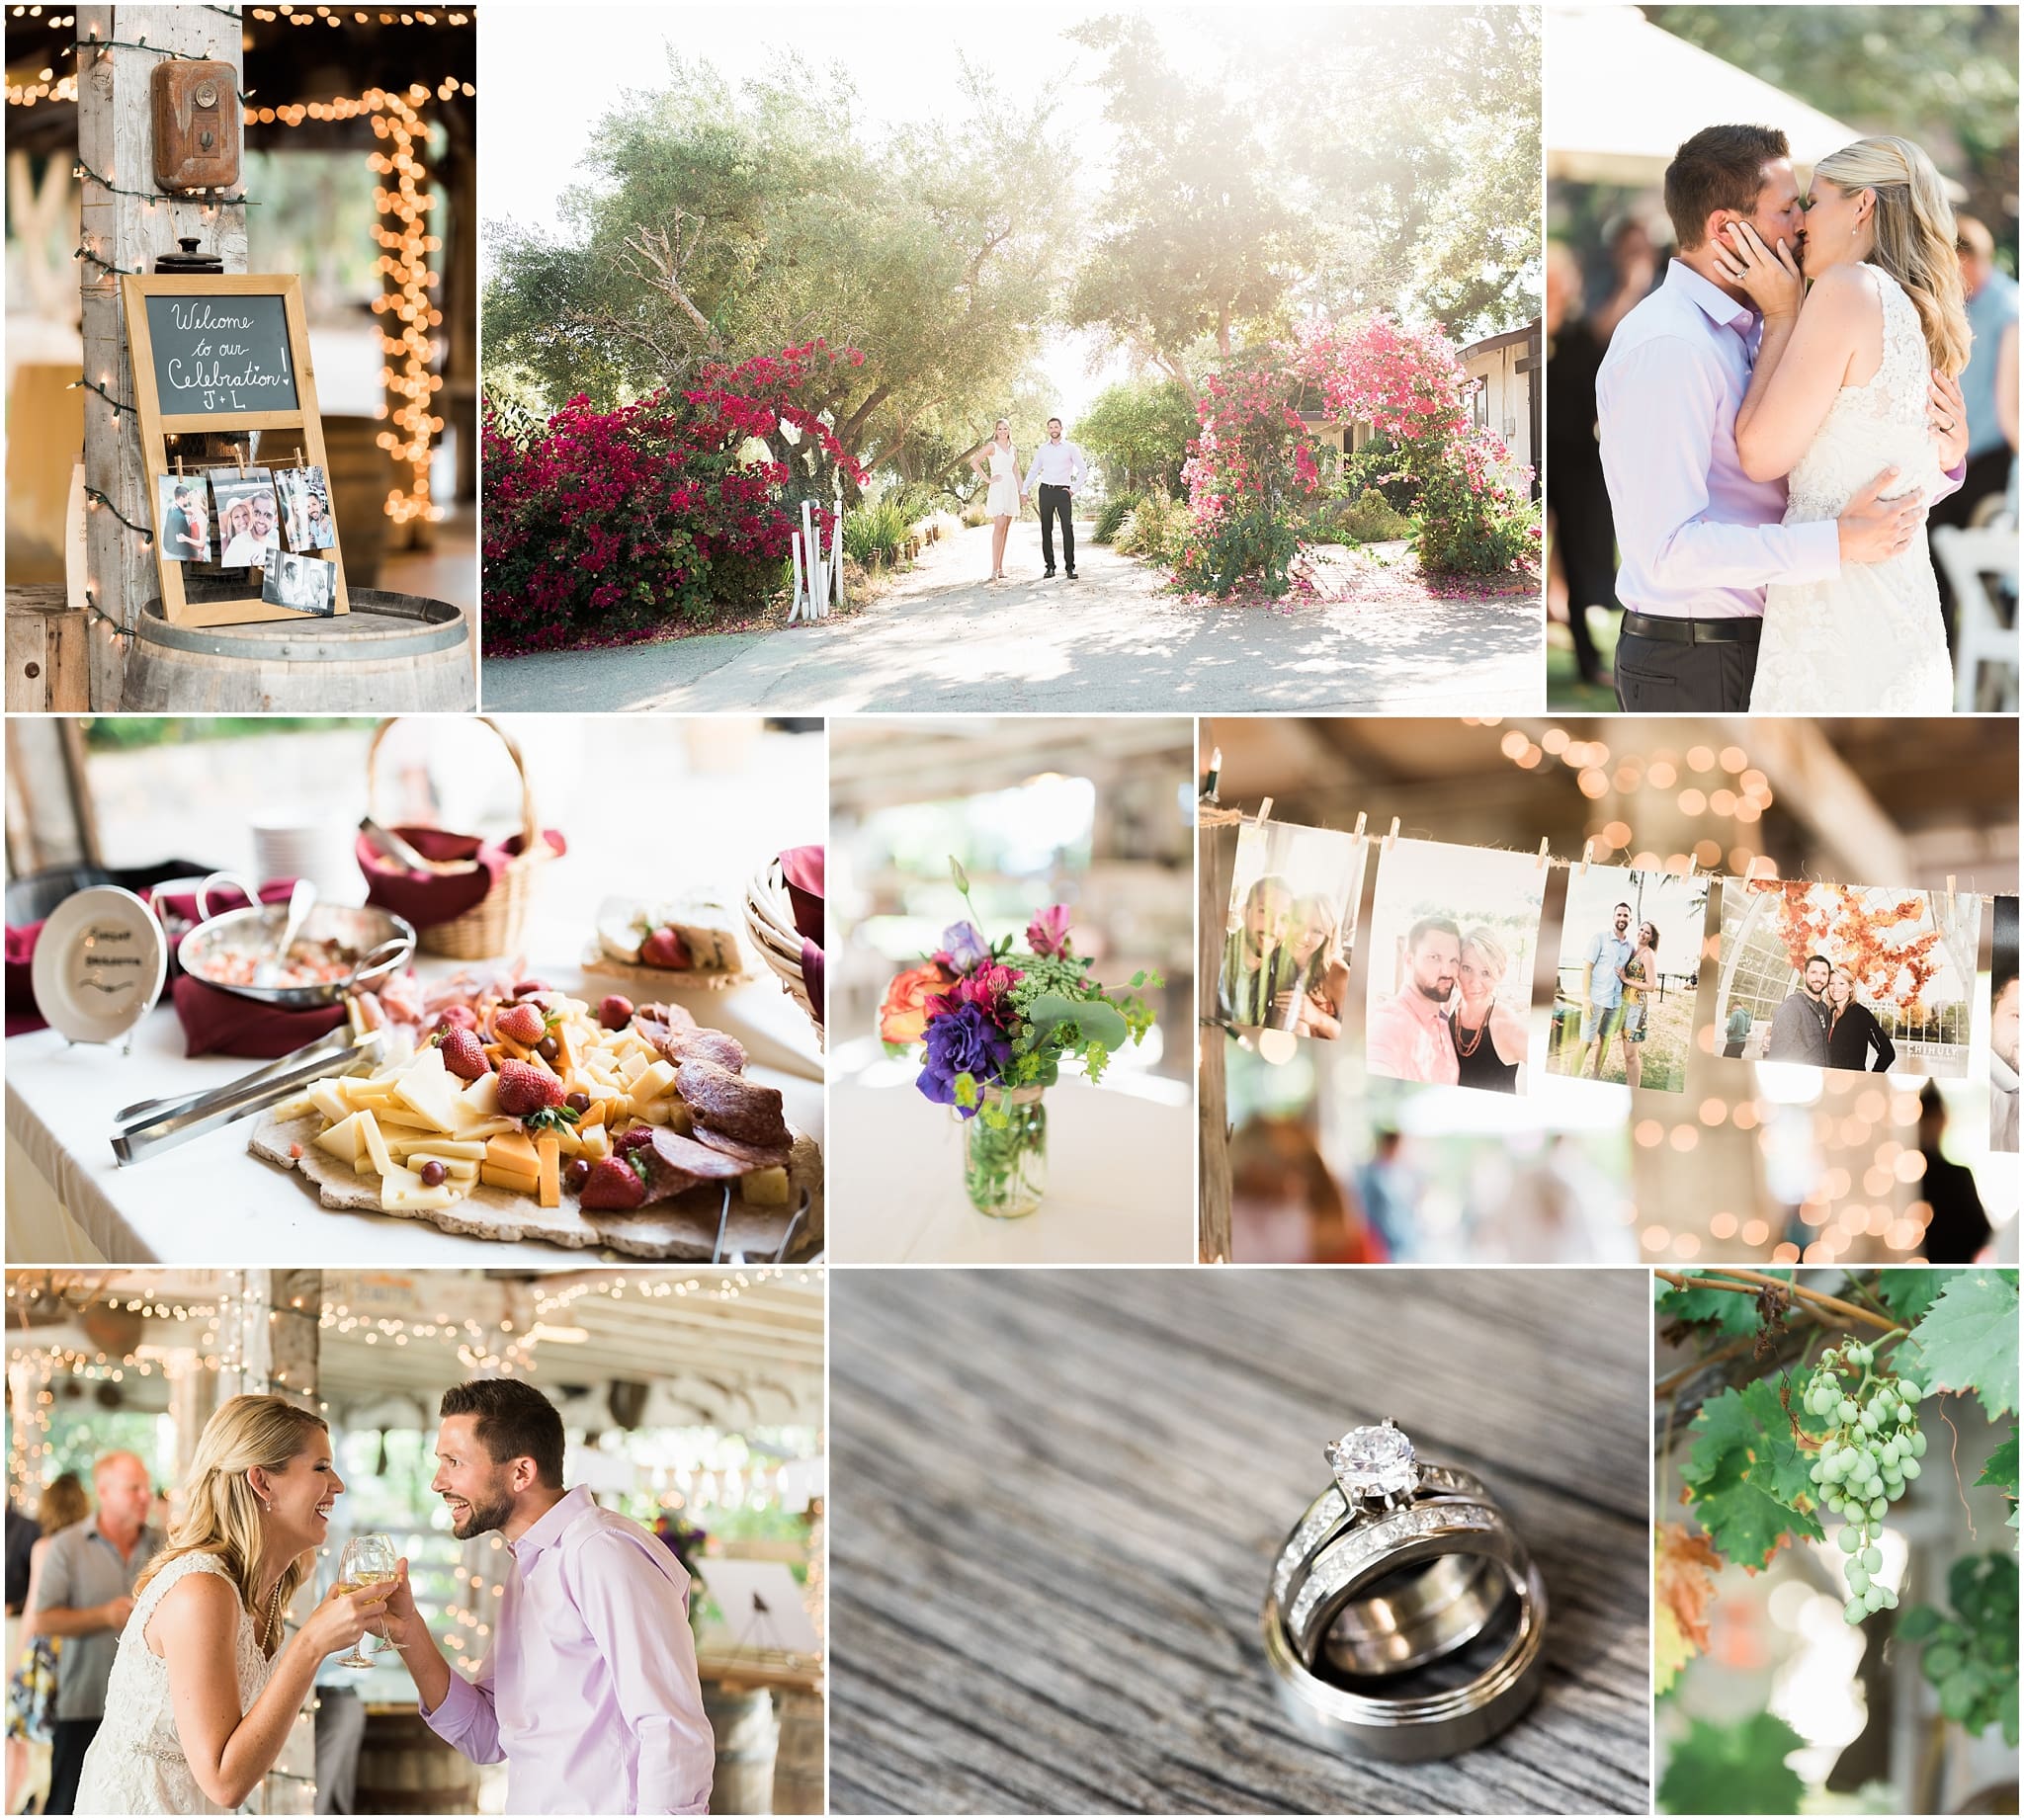 Rustic Bernardo Winery Wedding Reception featured on San Diego Wedding_0010